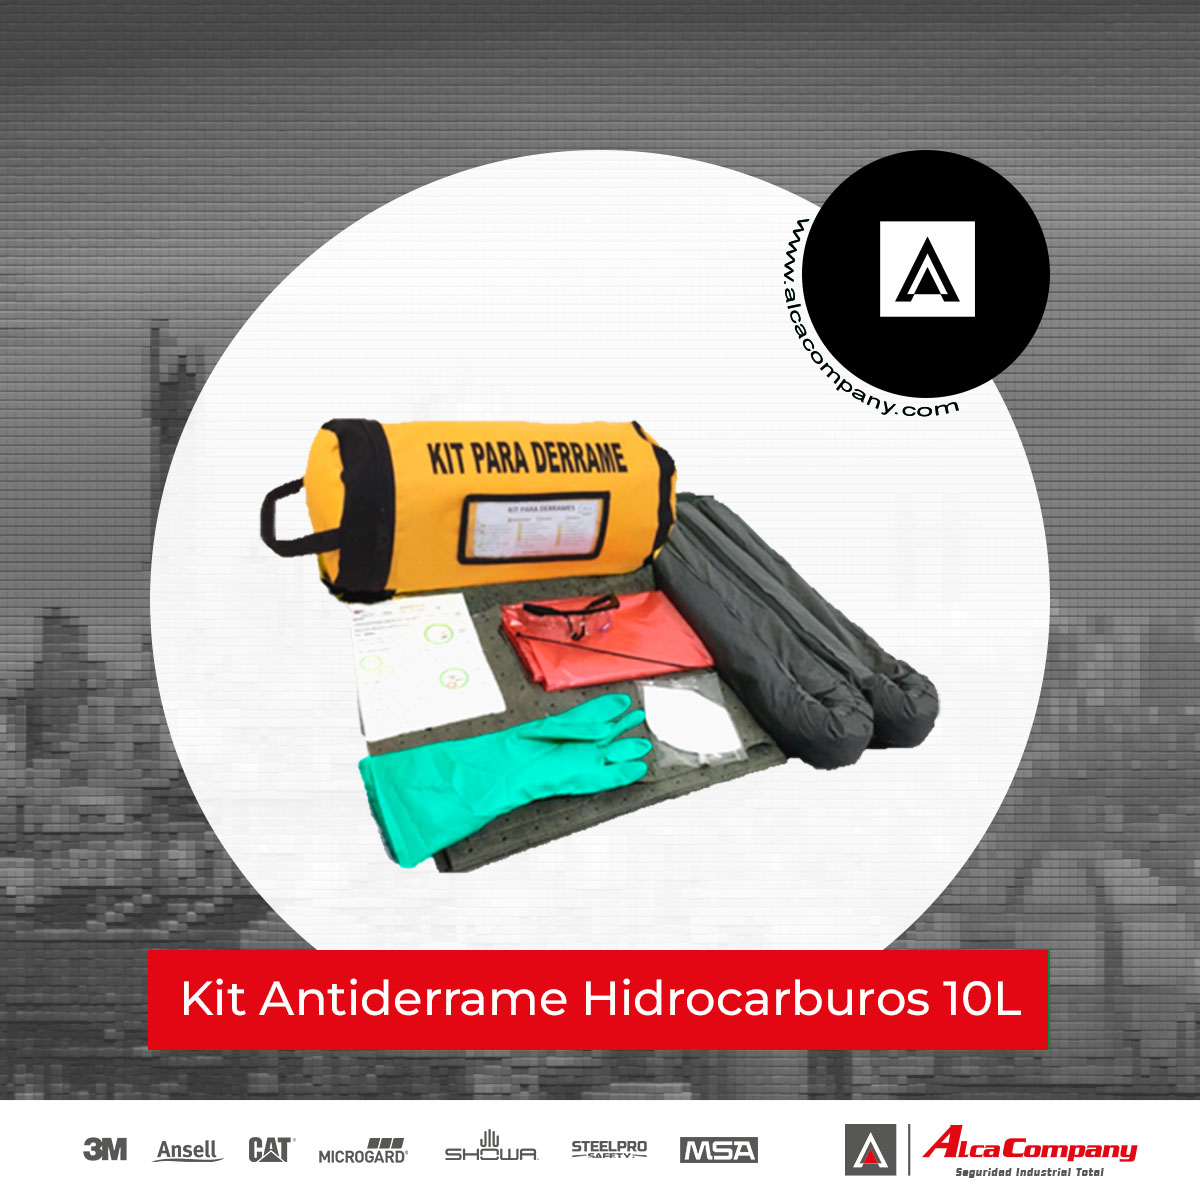 Kit Antiderrame Hidrocarburos 10L